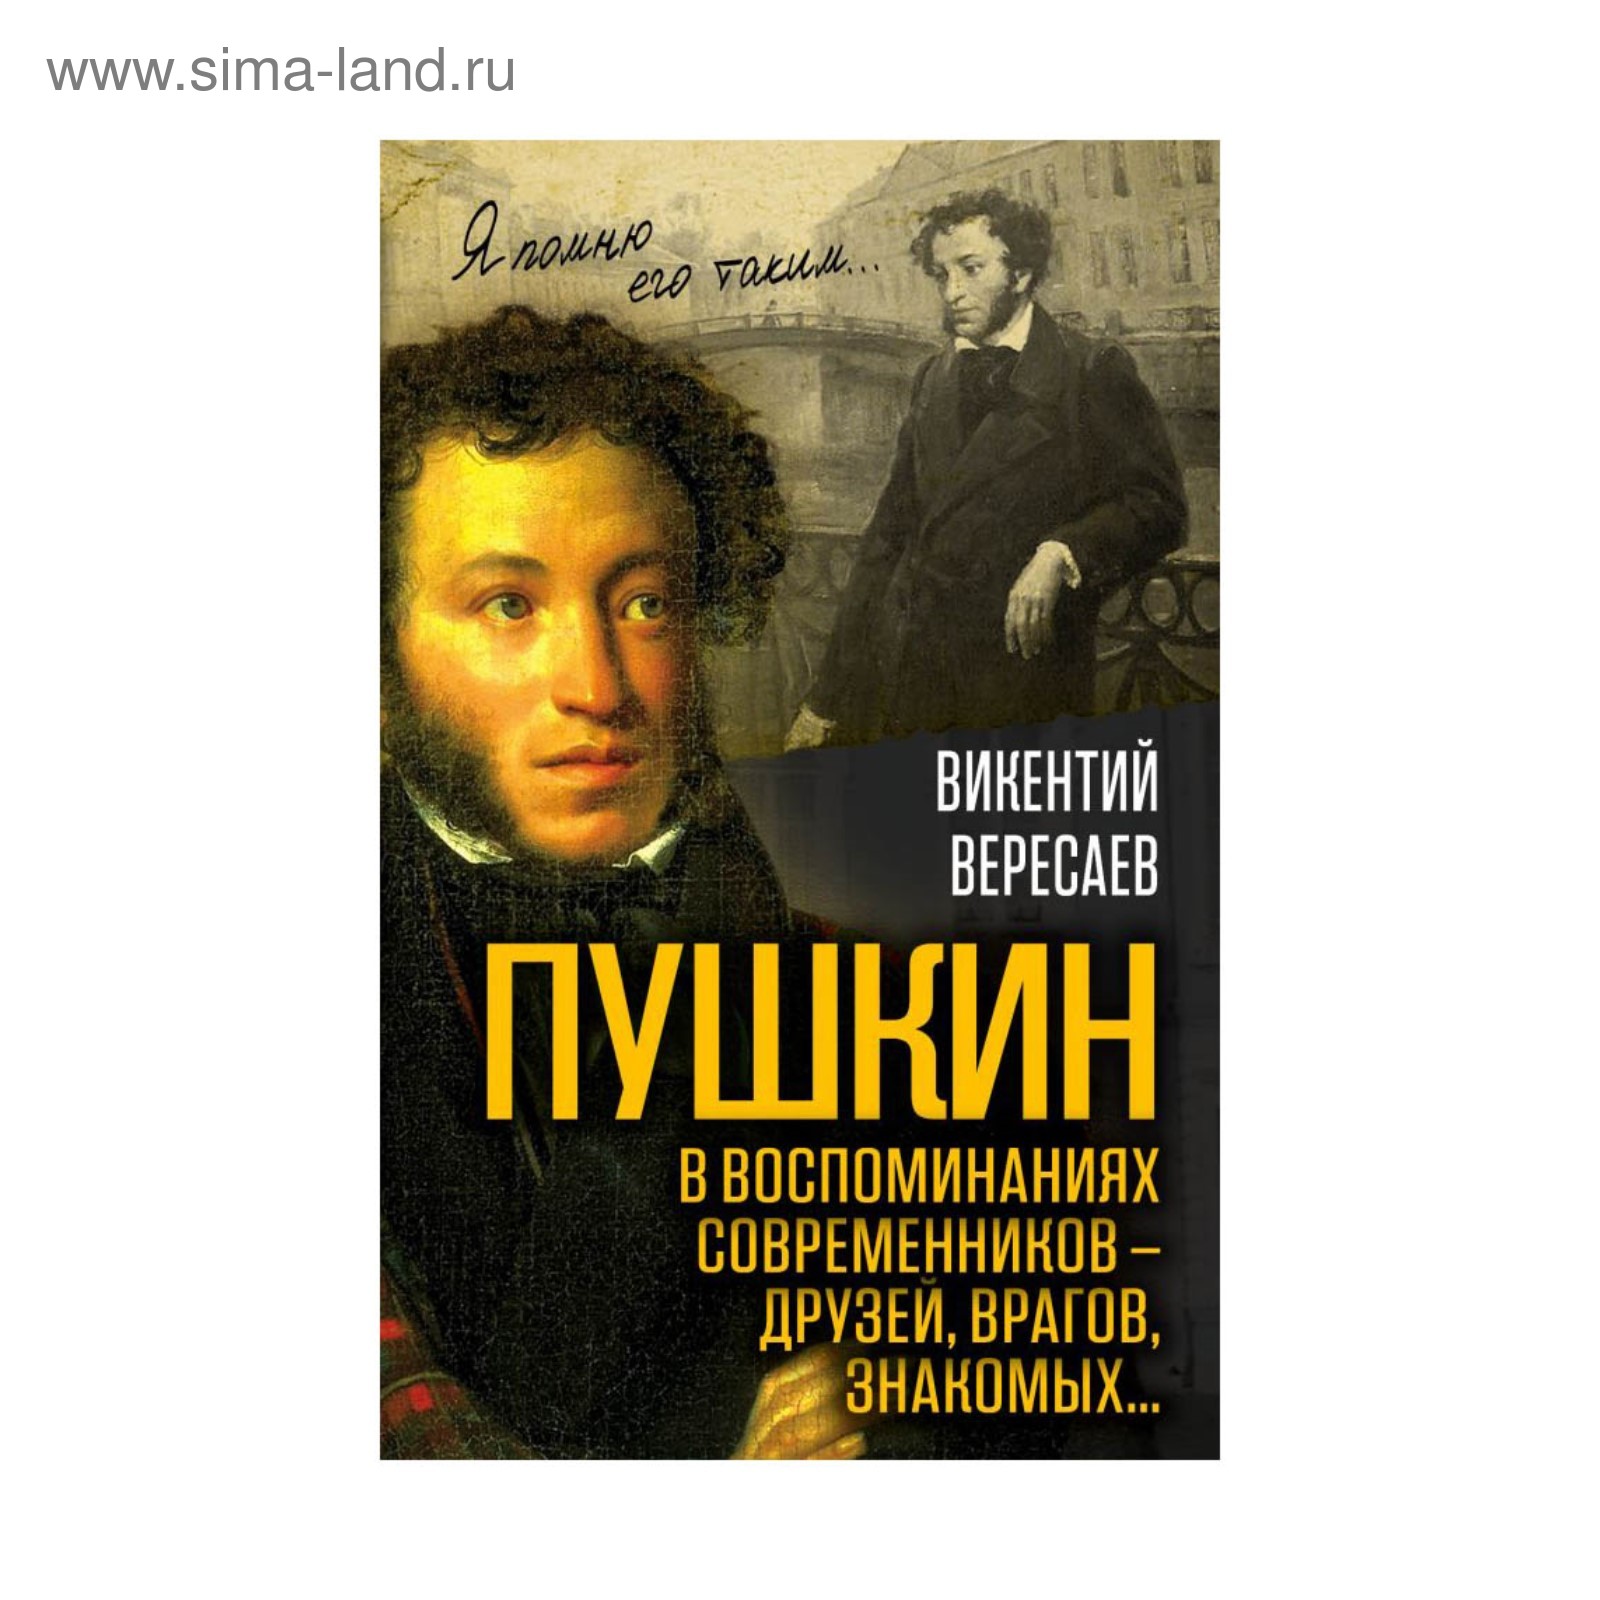 Пушкин в воспоминаниях современников книга